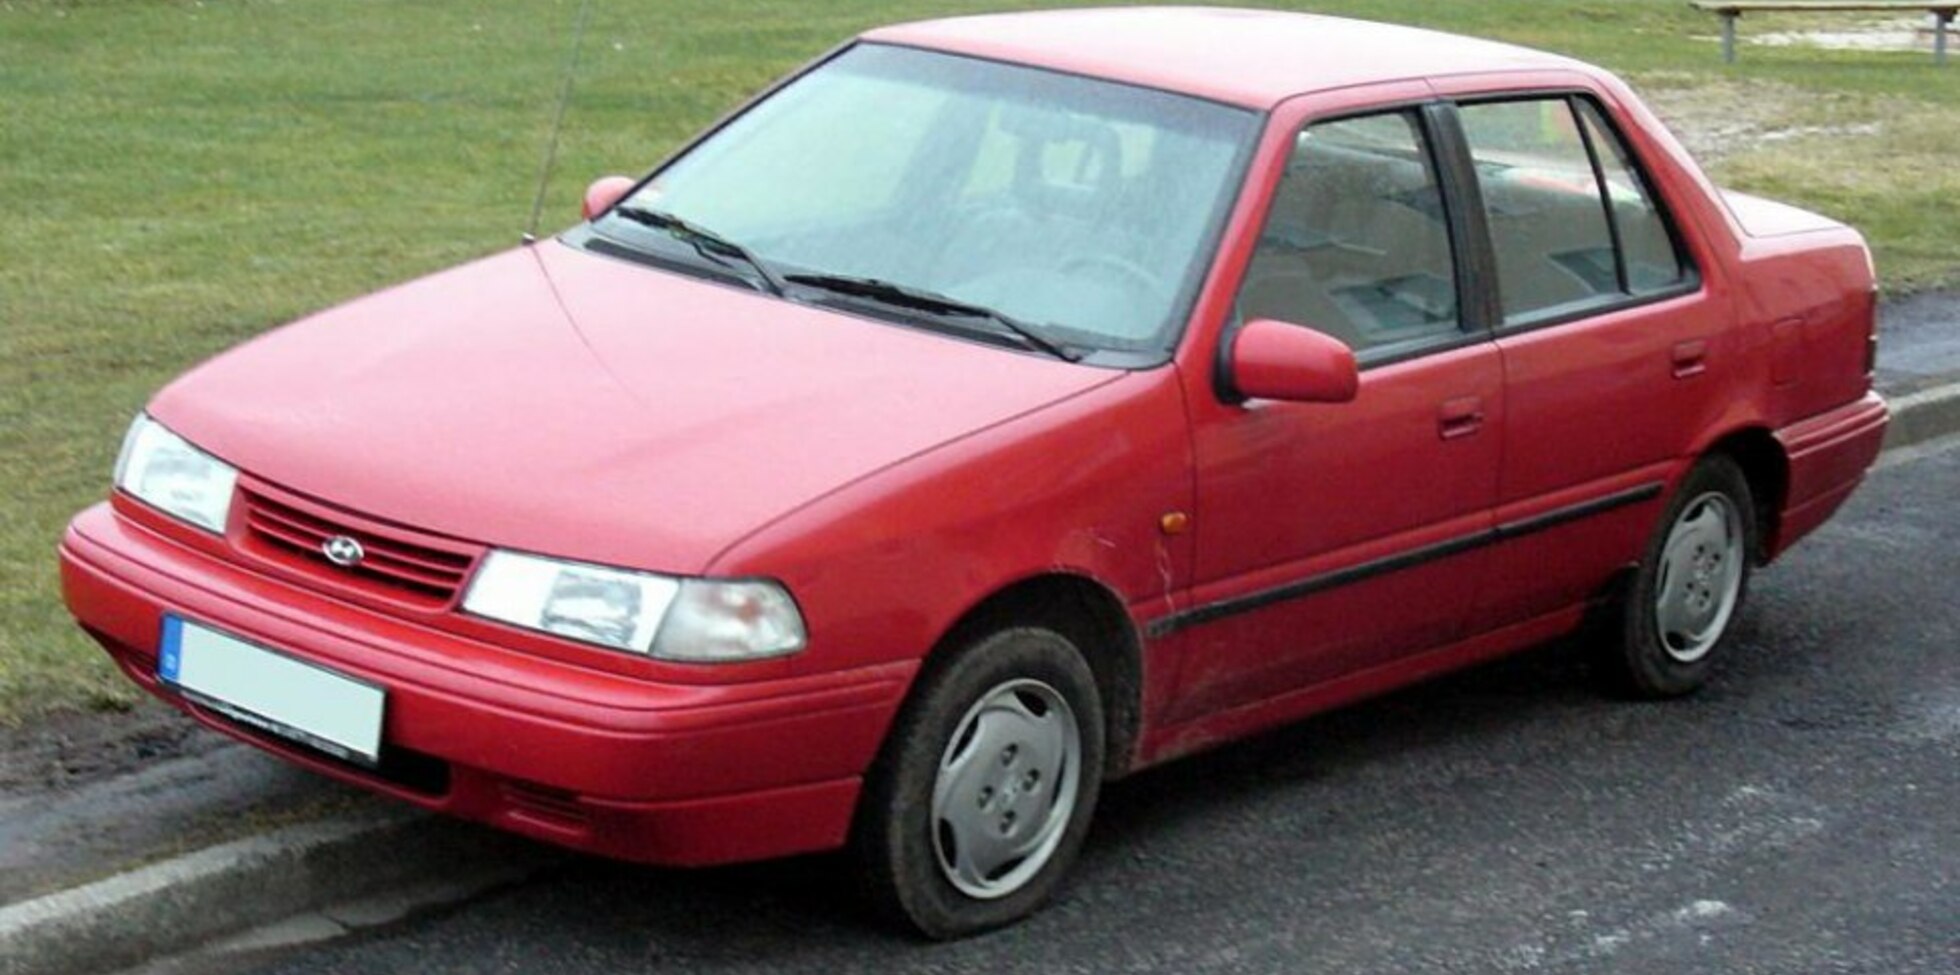 Hyundai Pony (X-2) 1.5 i (84 Hp) Automatic 1989, 1990, 1991, 1992, 1993, 1994, 1995 